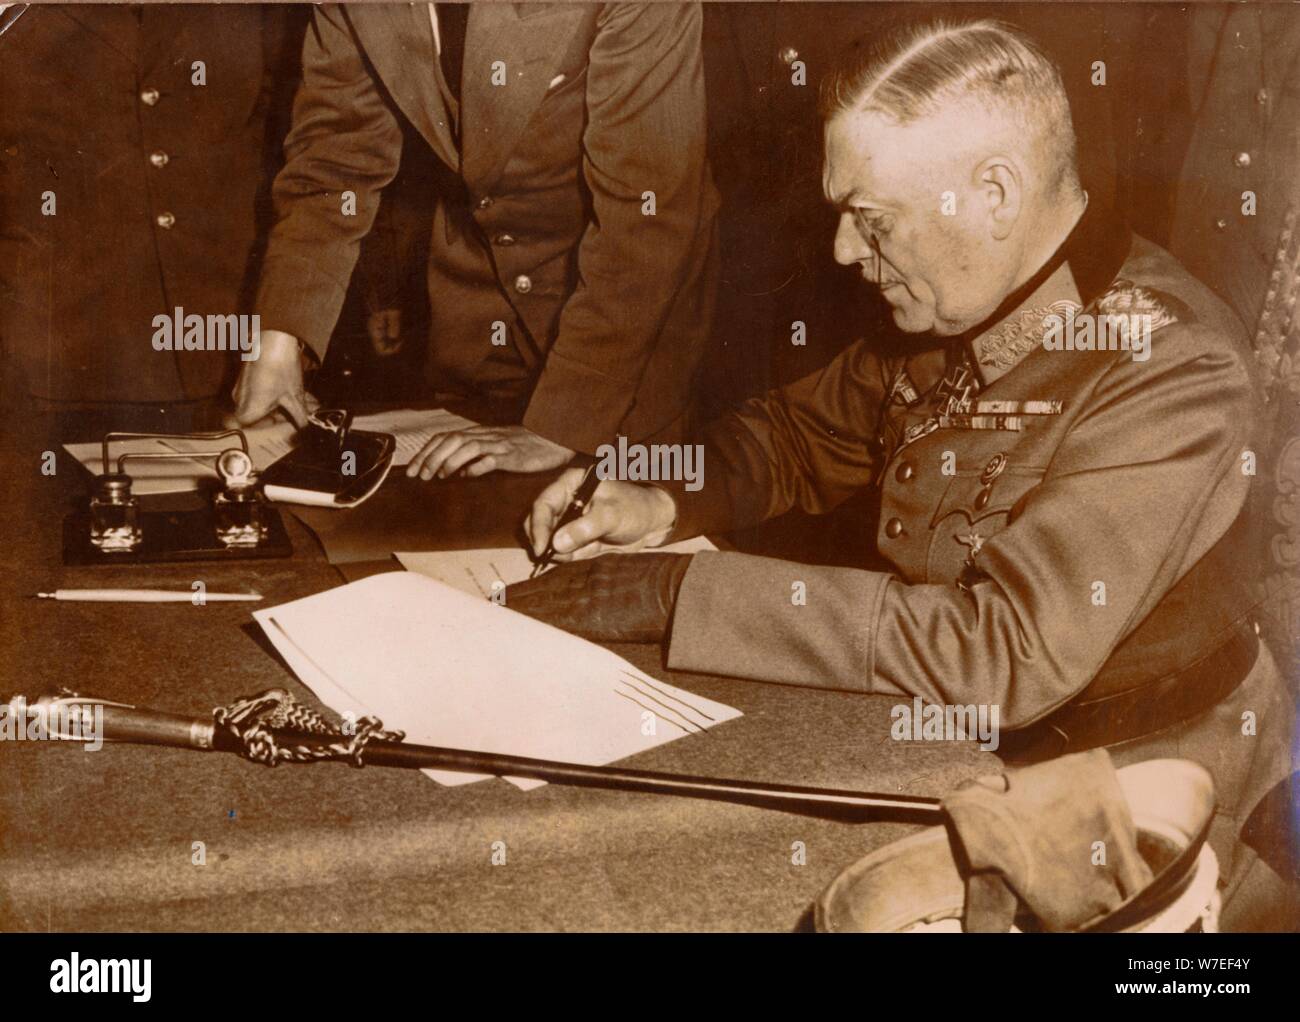 Reddition sans condition des forces armées allemandes, Reims, France, la seconde guerre mondiale, le 7 mai 1945. Artiste : Inconnu Banque D'Images